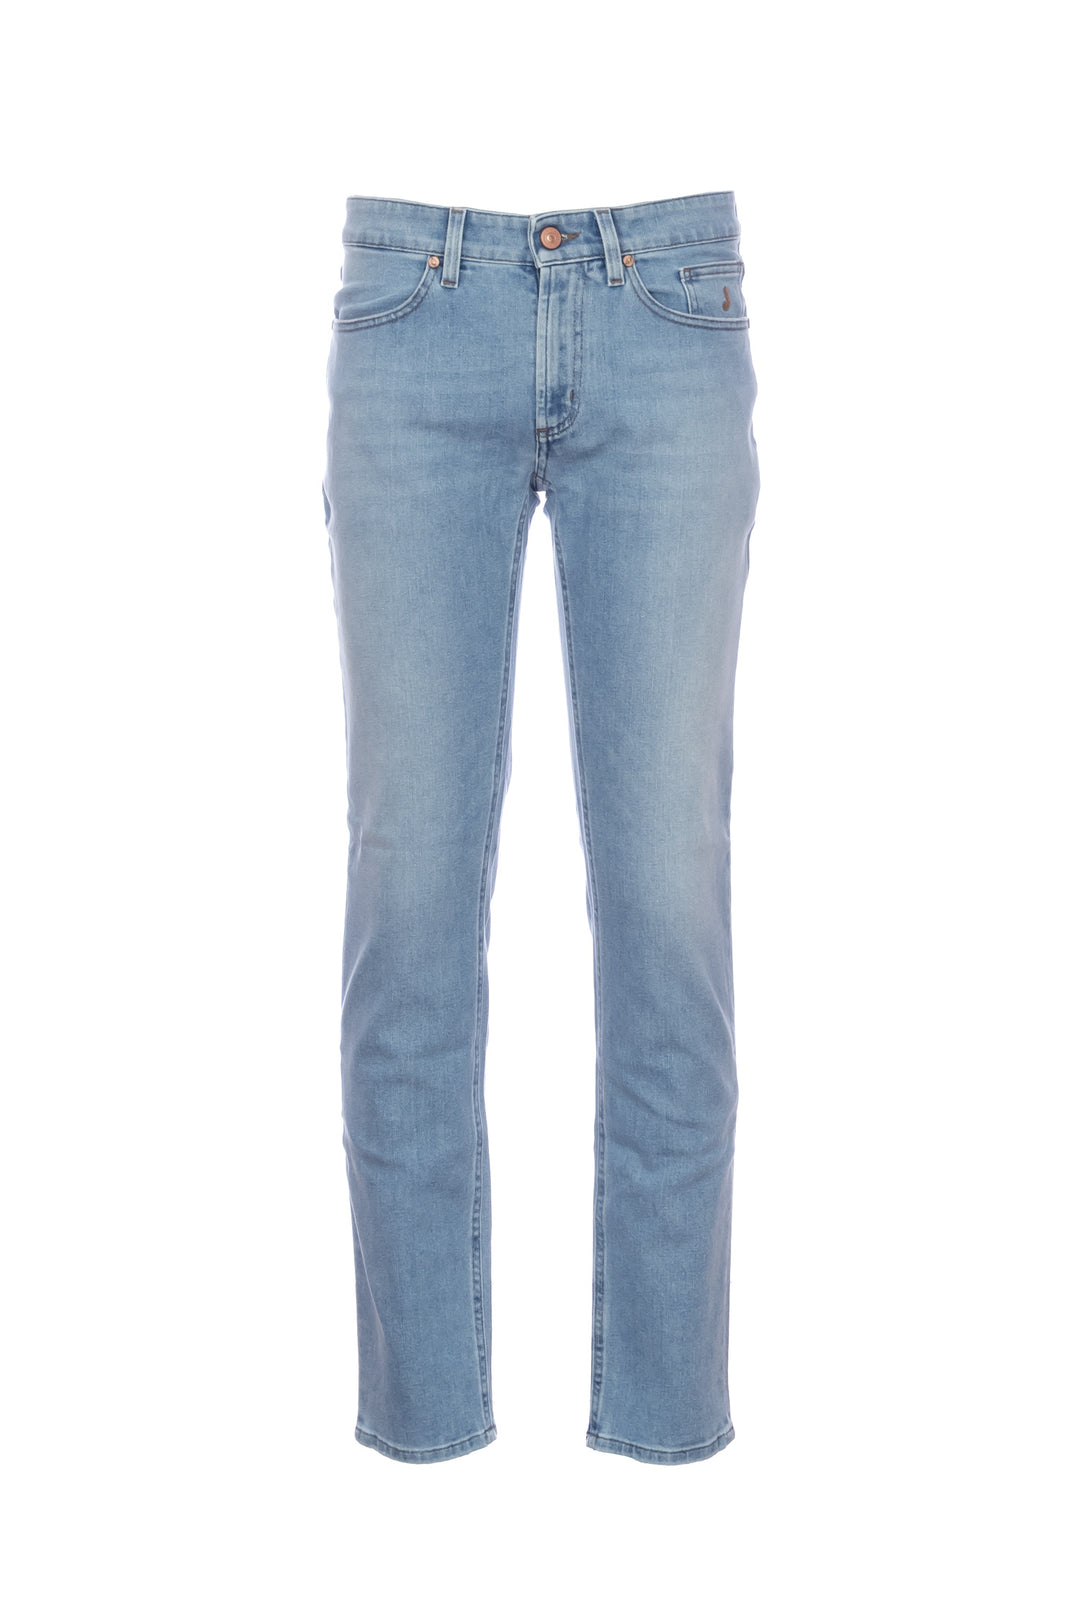 JECKERSON Jeans 5 tasche “JORDAN” in denim stretch lavaggio chiaro - Mancinelli 1954